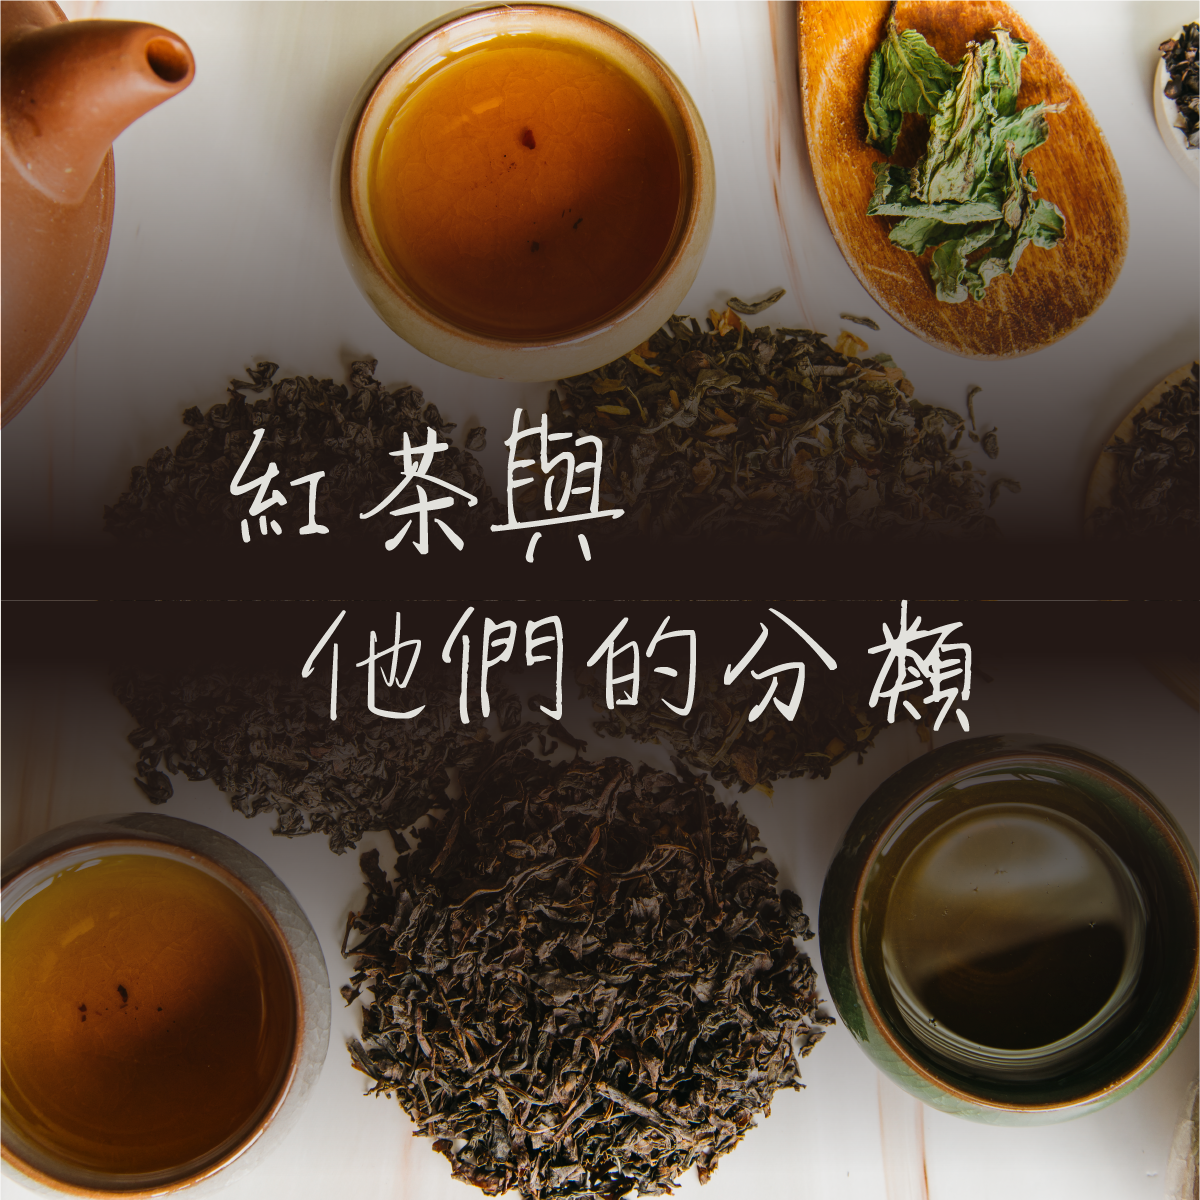 學會 紅茶 分類好簡單 茶葉等級 著名產地 經典茶款 荼公子 Han Yi 韓奕